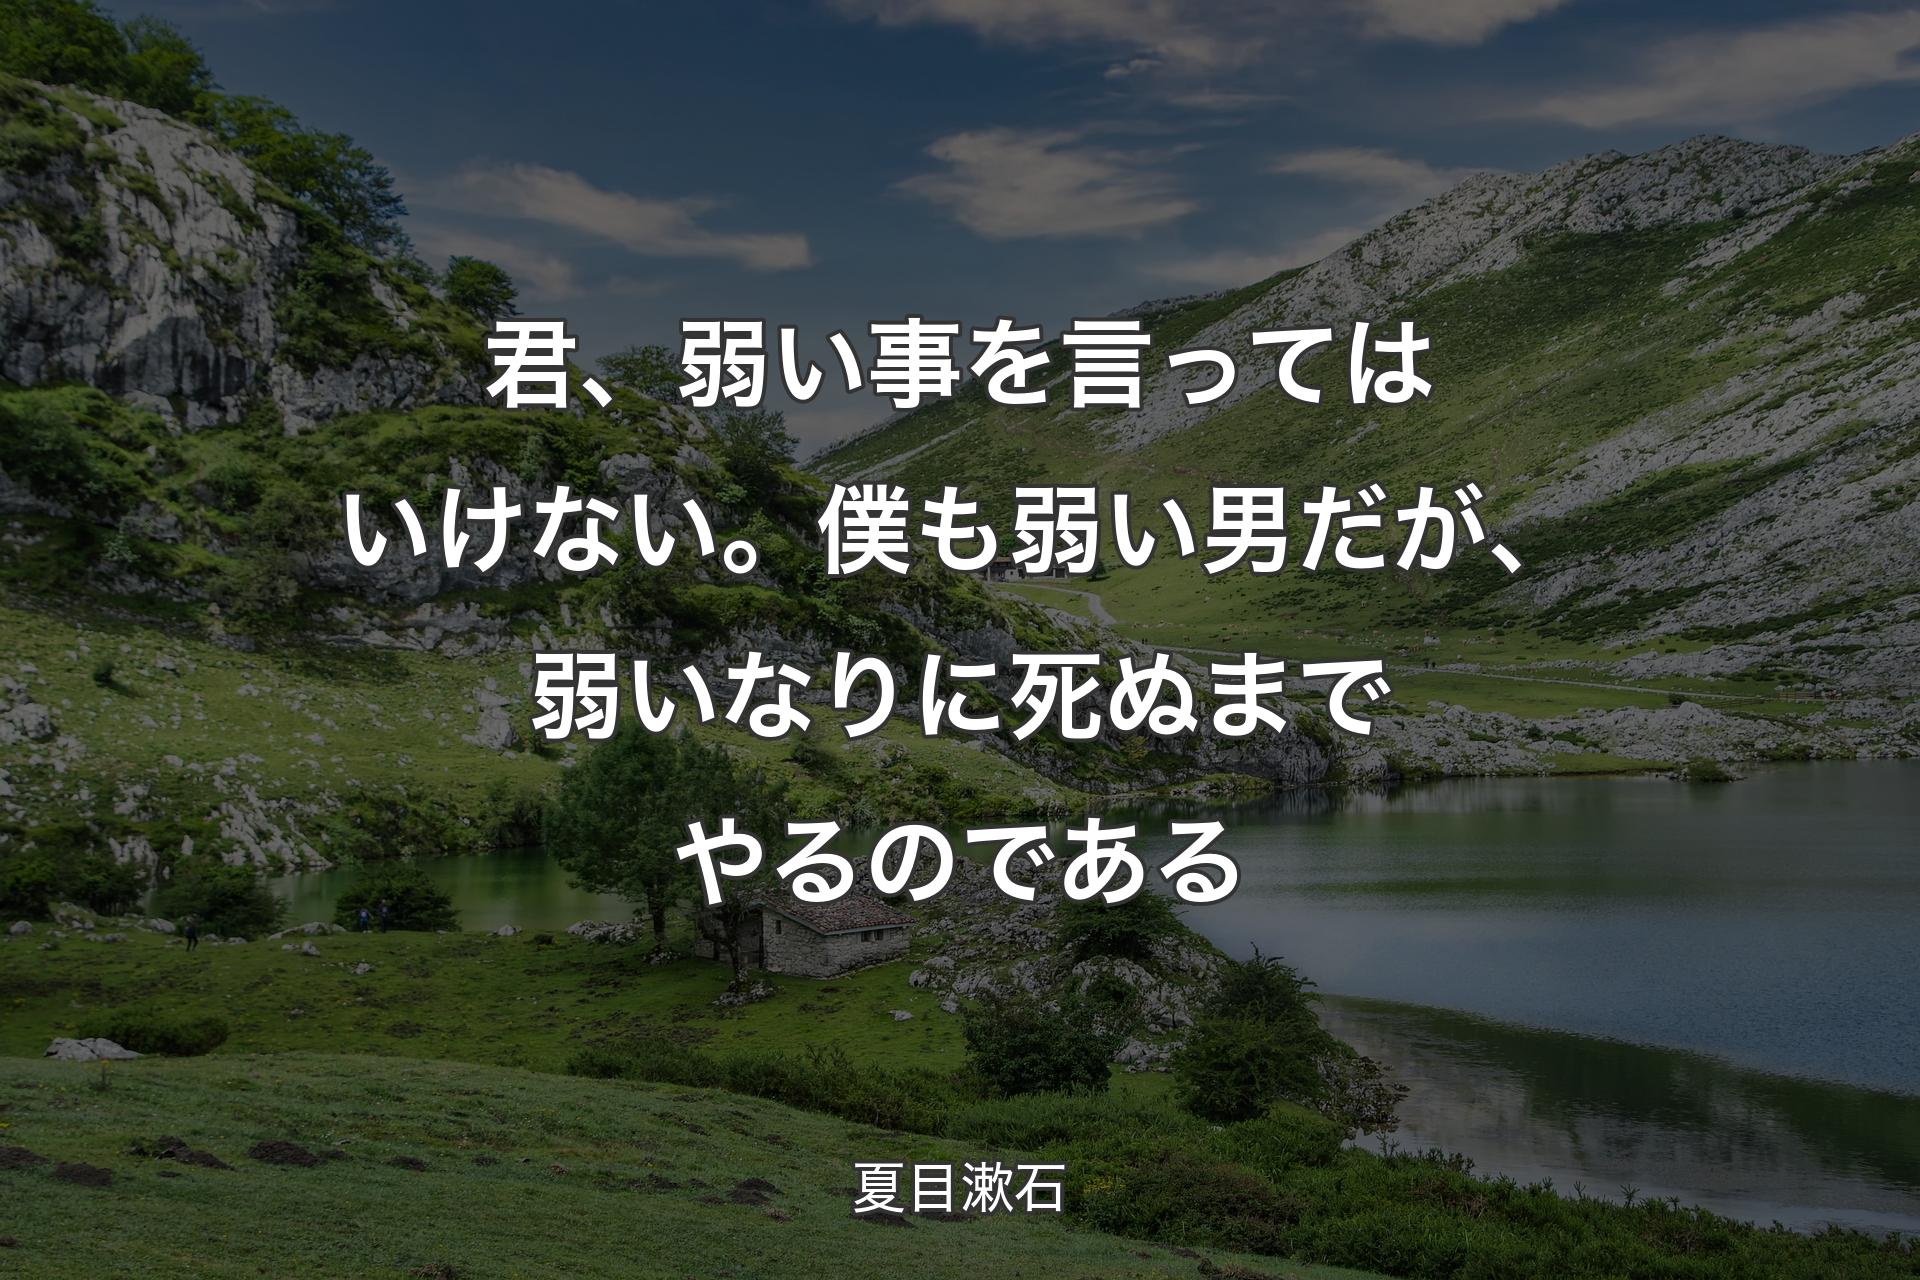 君、弱い事を言ってはいけない。�僕も弱い男だが、弱いなりに死ぬまでやるのである - 夏目漱石